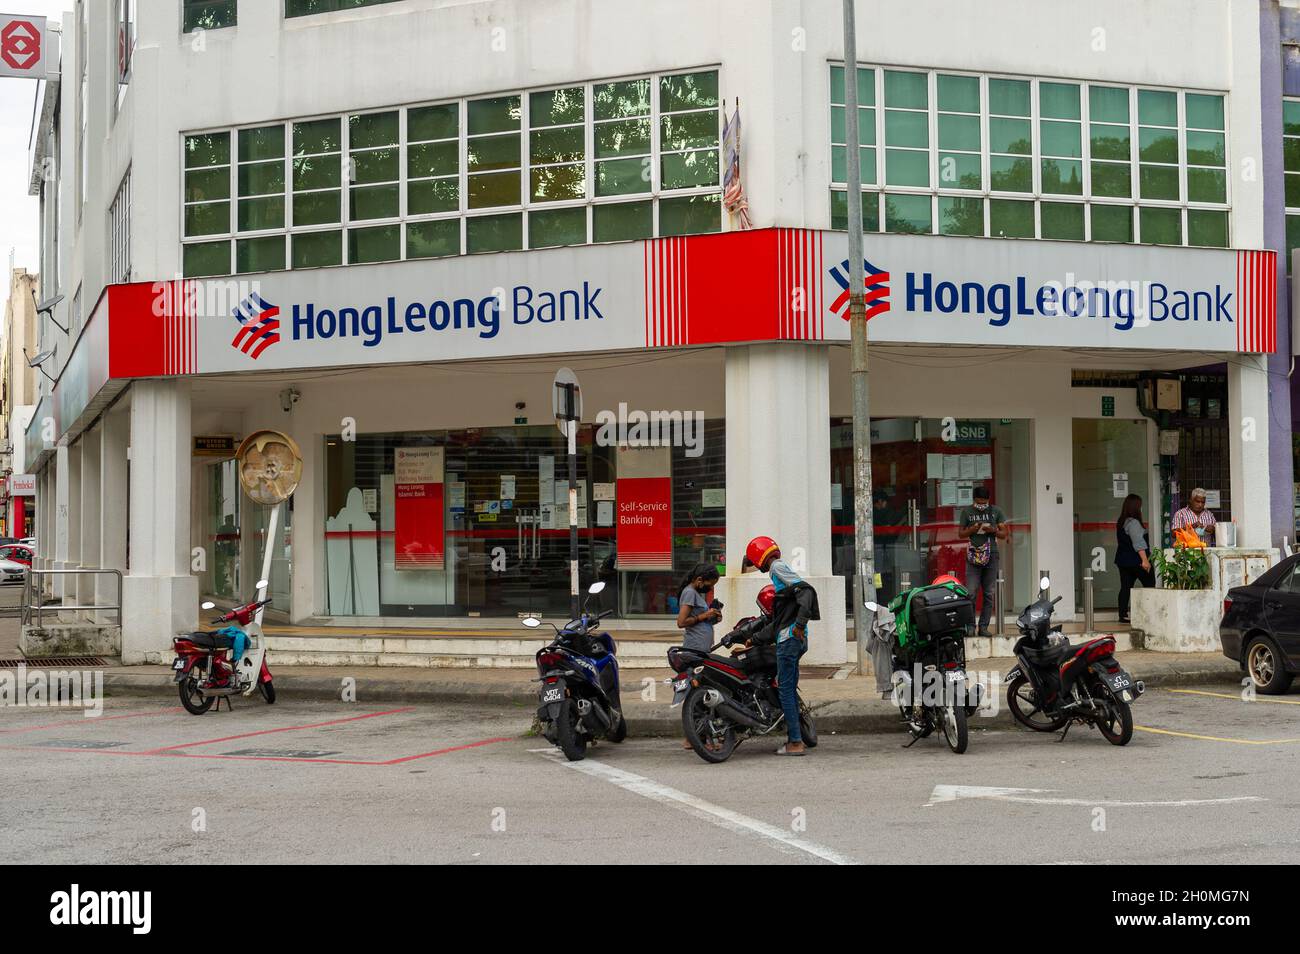 Hong leong bank customer service